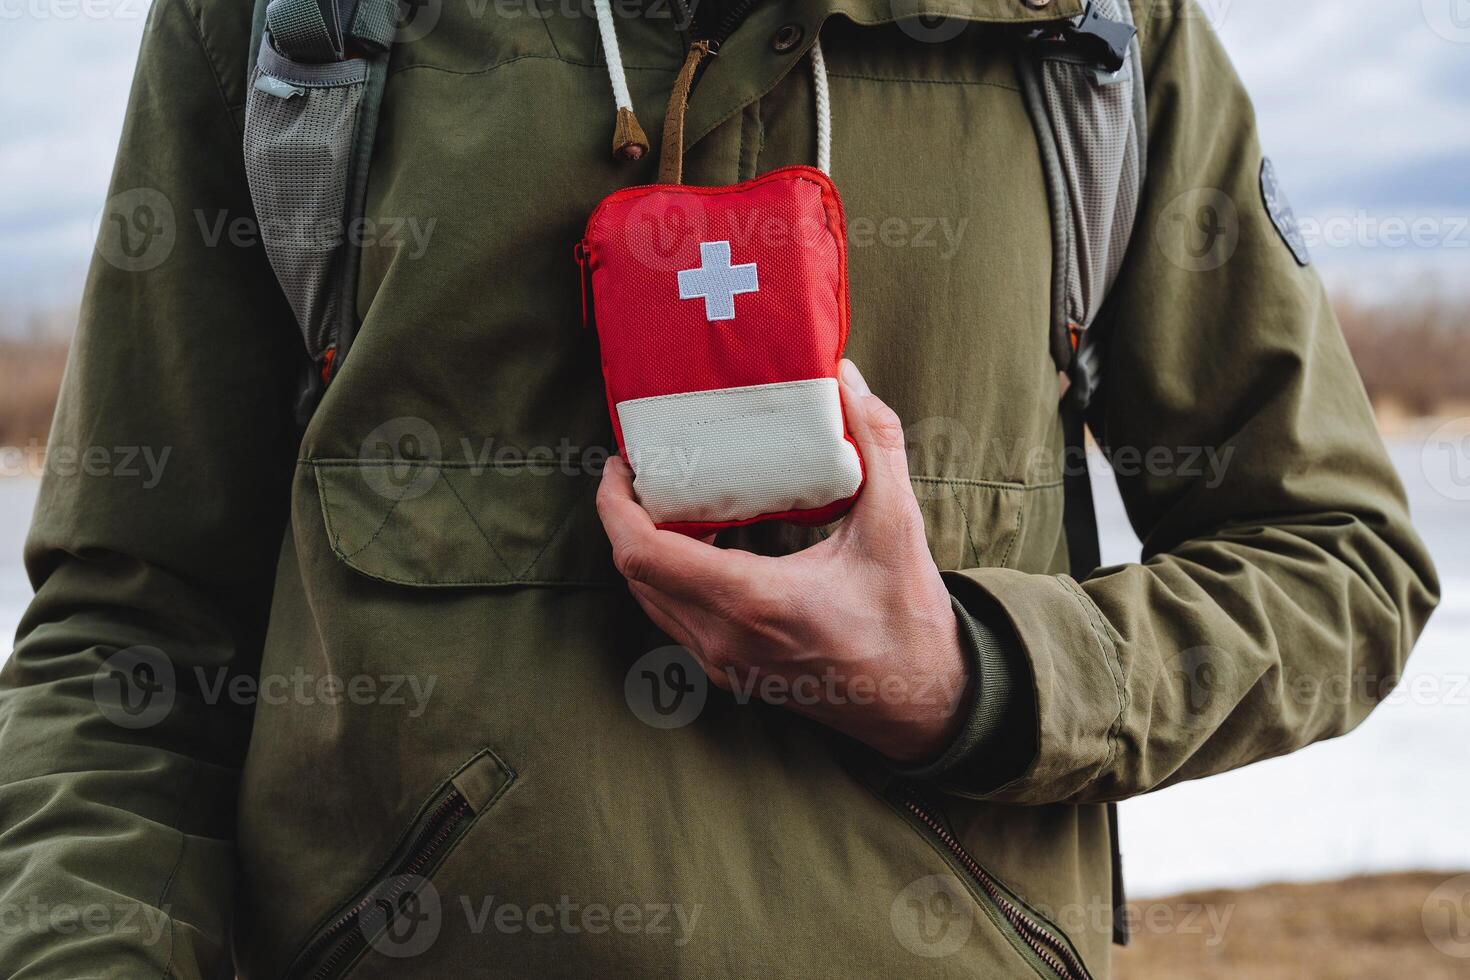 een toerist persoon houdt in zijn hand- een eerste steun uitrusting, een rood medisch zak voor Spoedgevallen, Gezondheid zorg, een wit kruis, camping apparatuur. foto